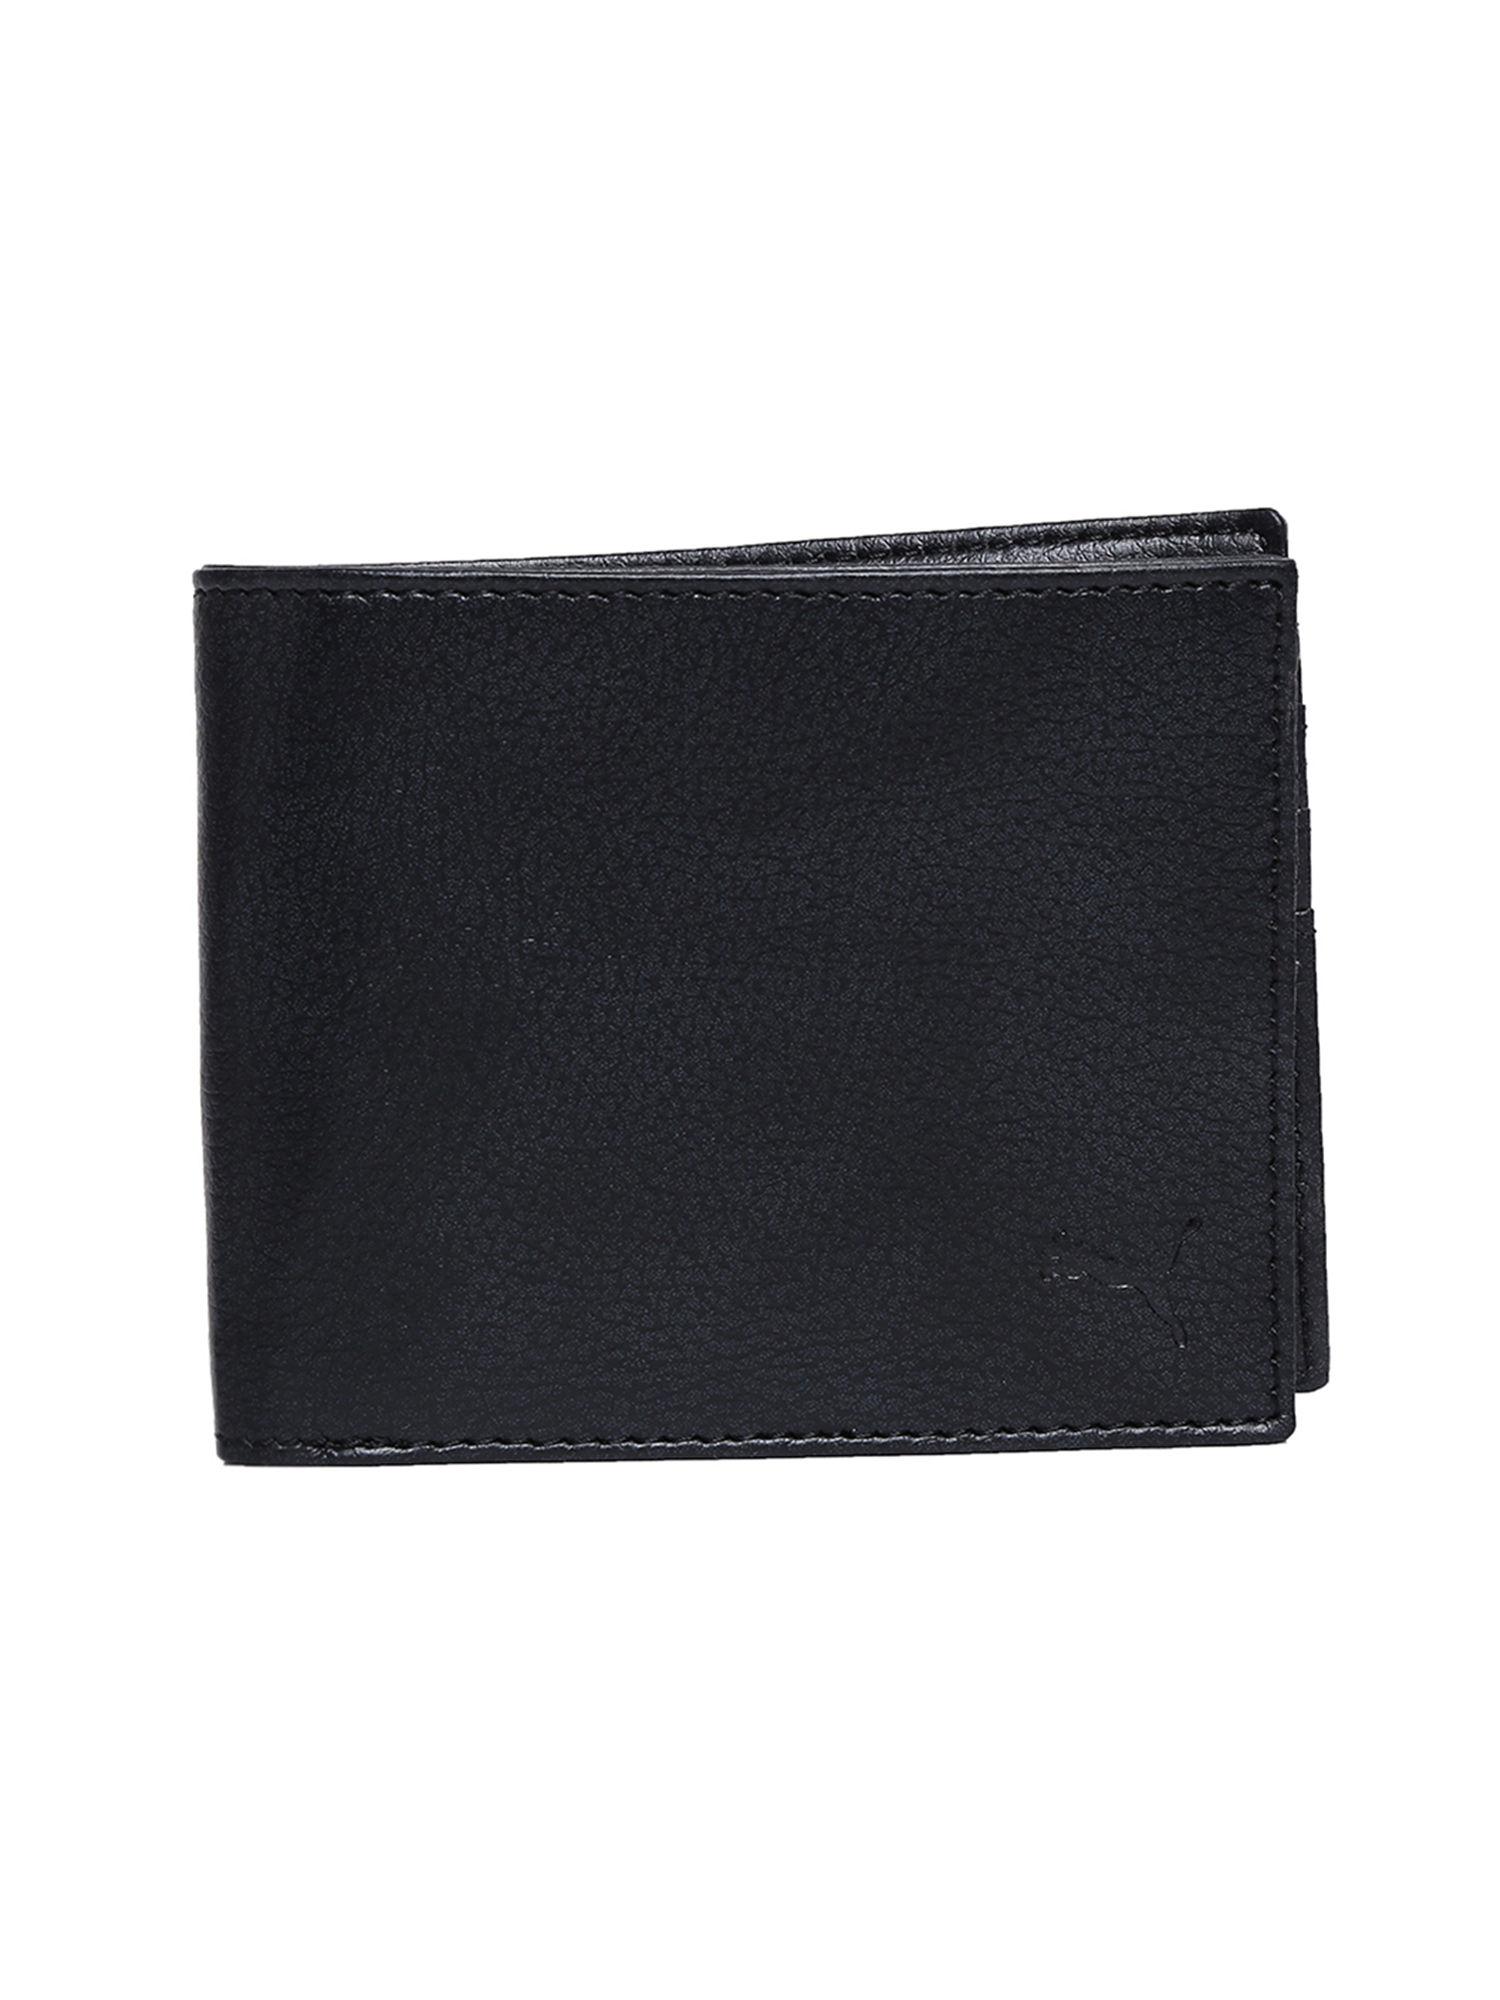 black card holder set wallet